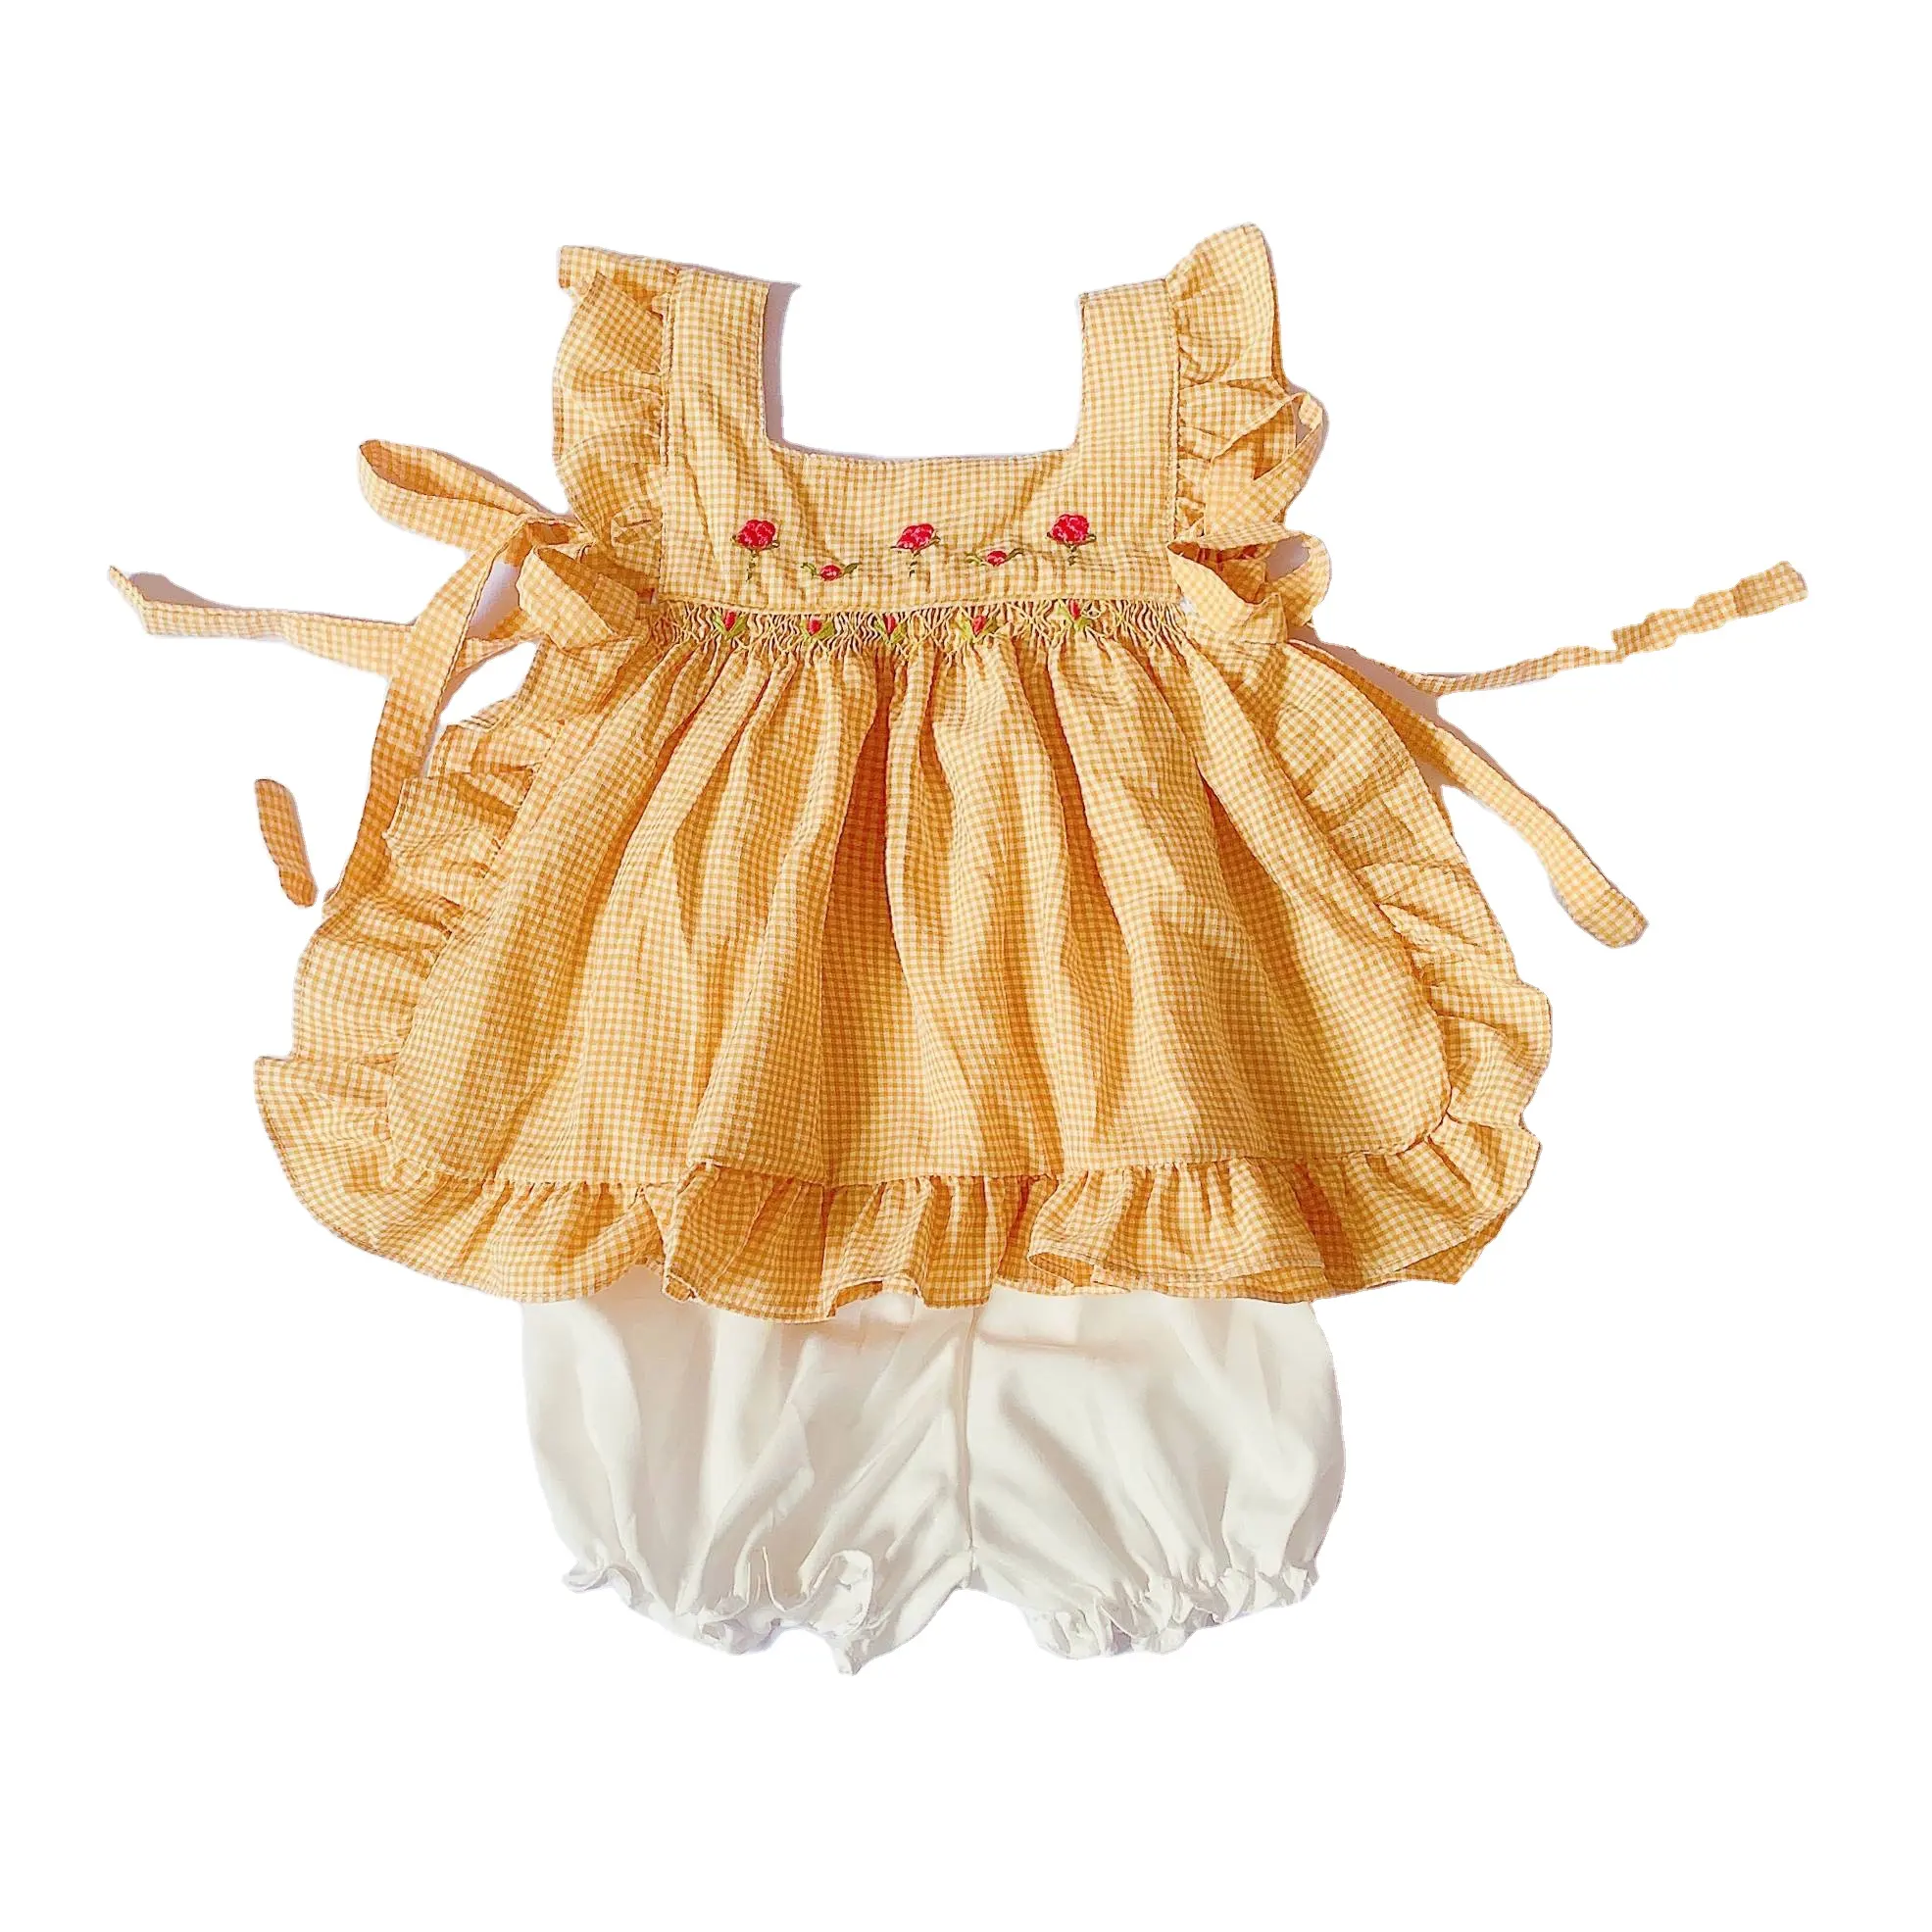 Yihui nuevo OEM verano nueva ropa para niños vestido de niñas conejo bordado bebé niña falda dulce princesa bebé conjunto